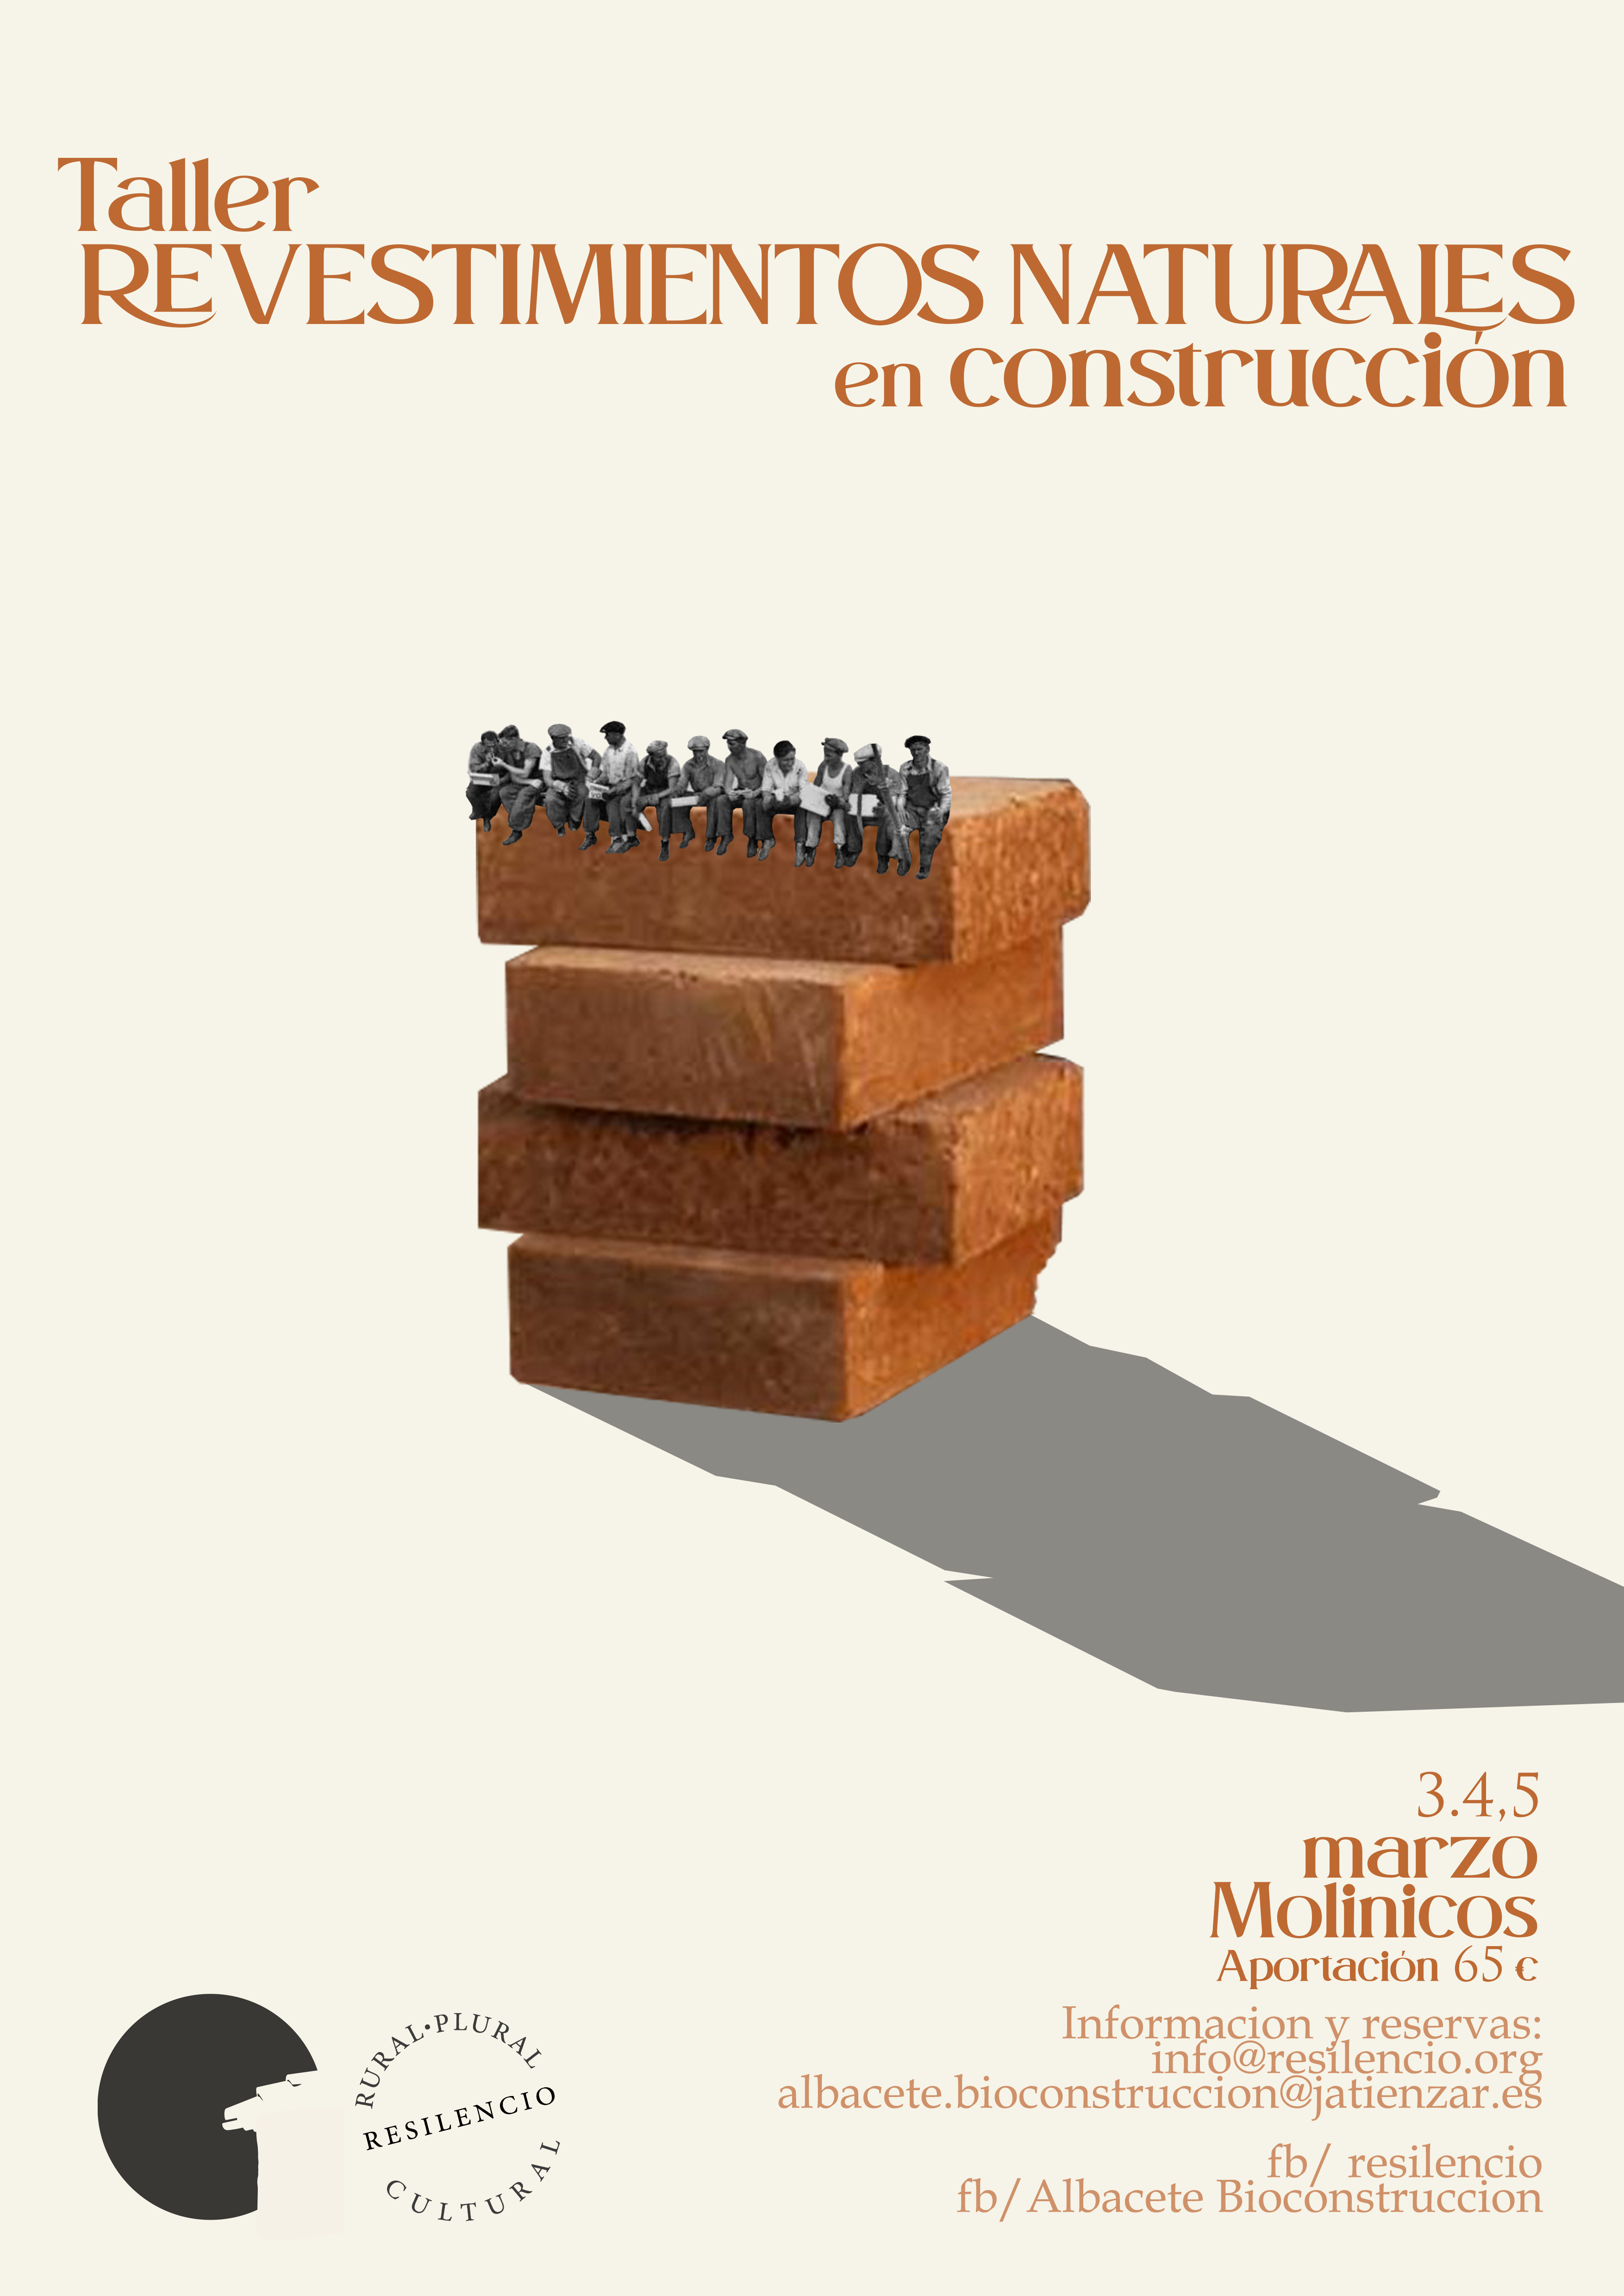 Taller de Revocos naturales - Albacete Bioconstrucción